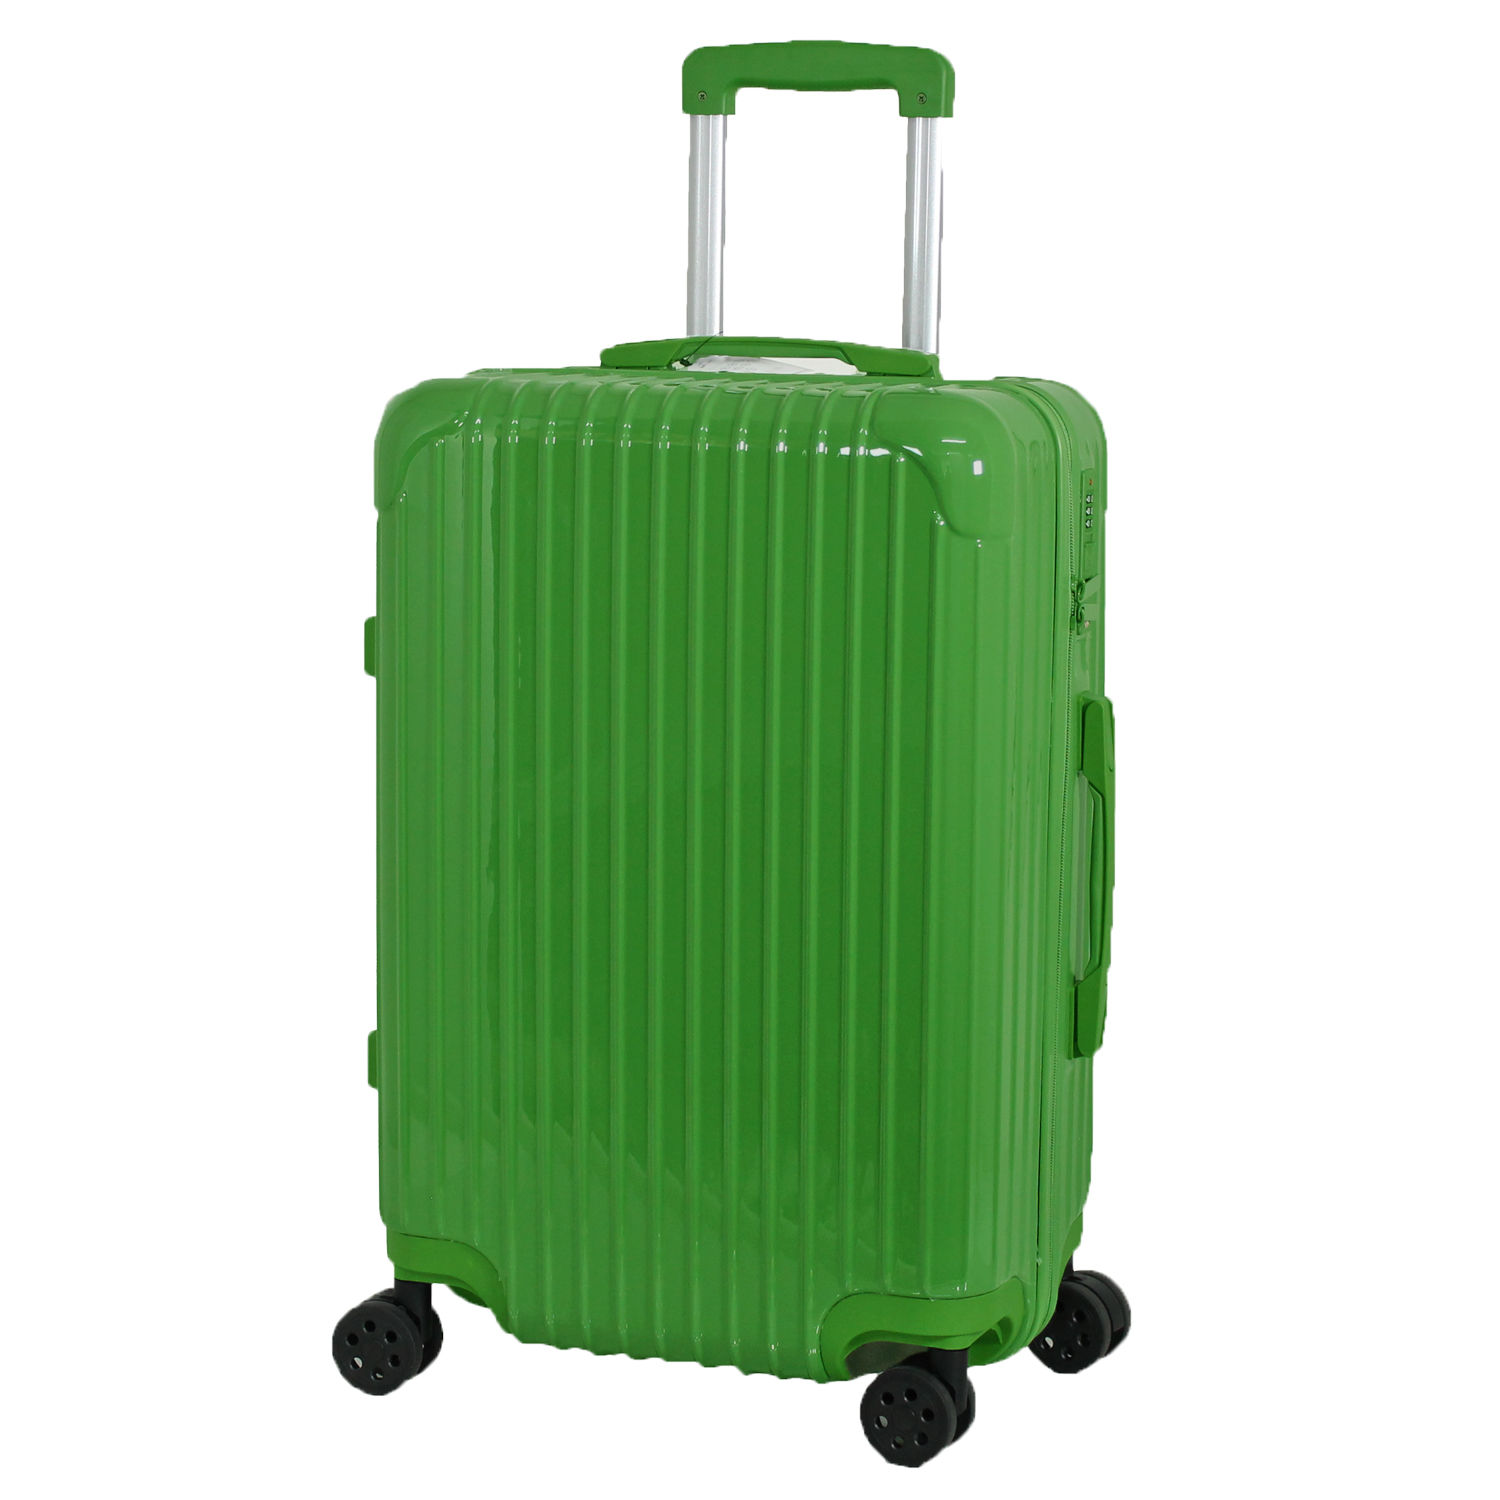 スーツケース キャリーケース LLサイズ かわいい 日本企業企画 大容量 修学旅行 おしゃれ キャリーバッグ 軽量 4輪 ダブルキャスター